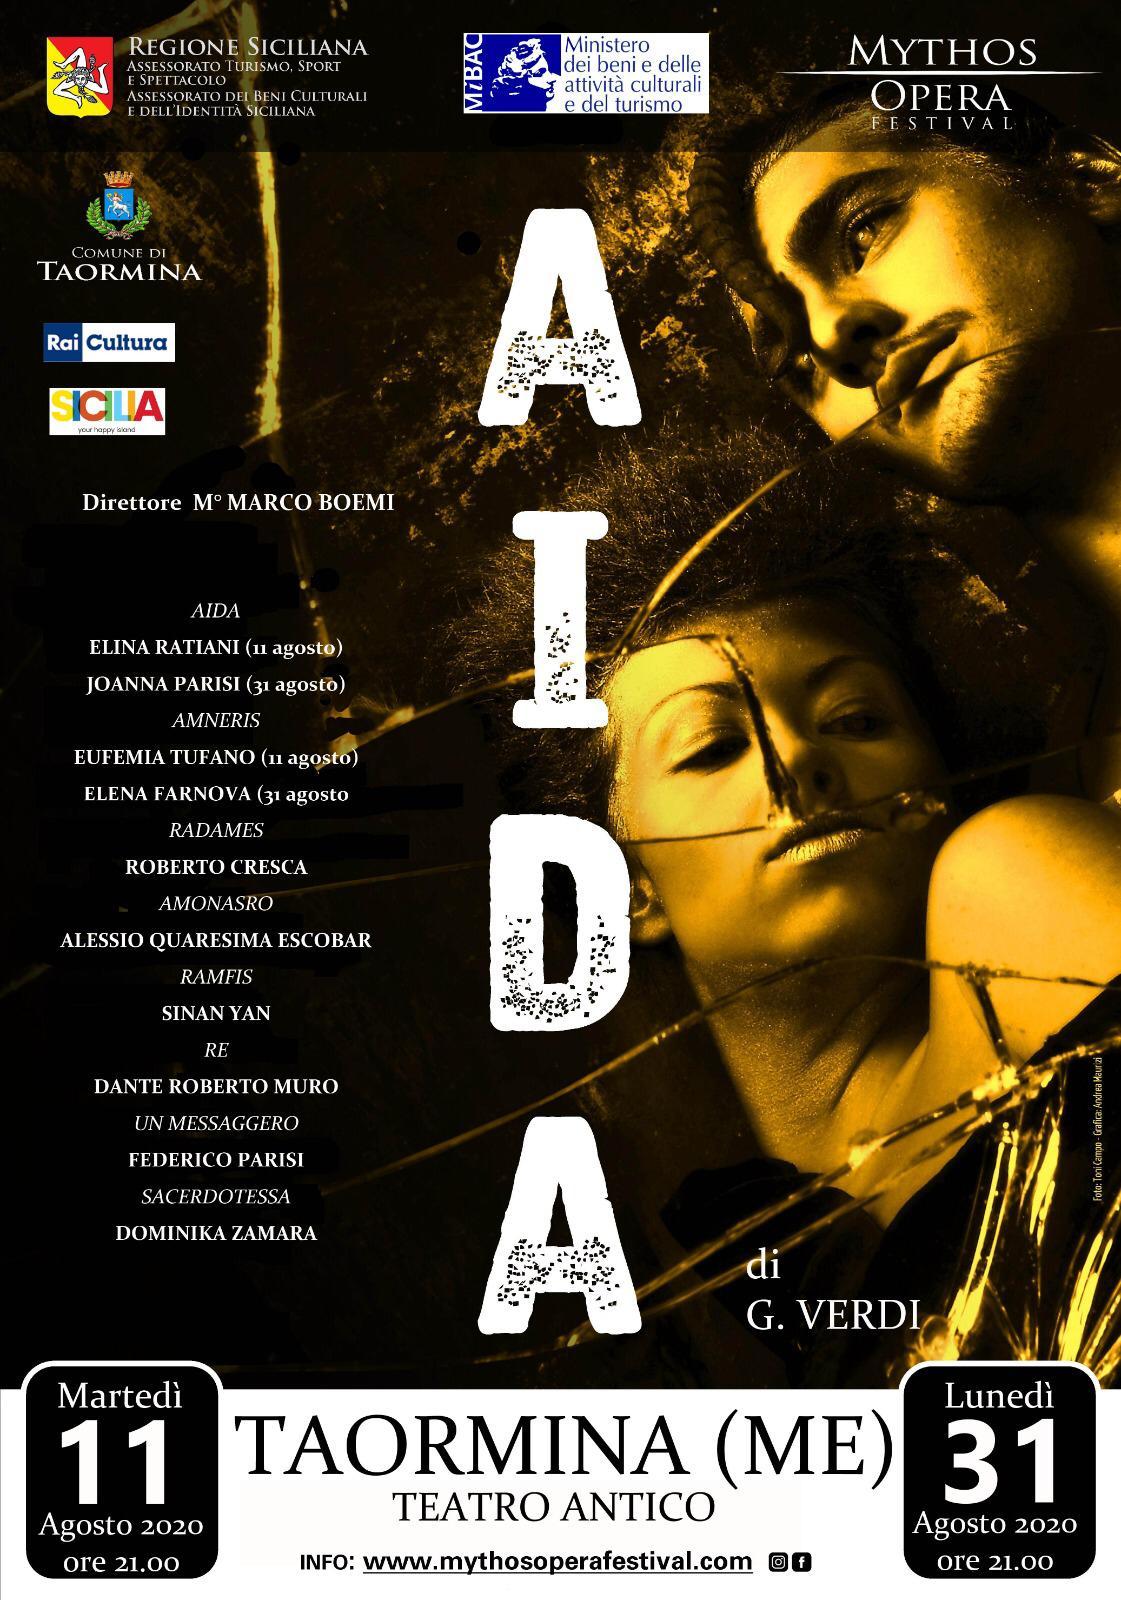 L’Aida al Teatro Antico di Taormina esalta le virtù drammatiche di Dominika Zamara in veste della sacerdotessa.